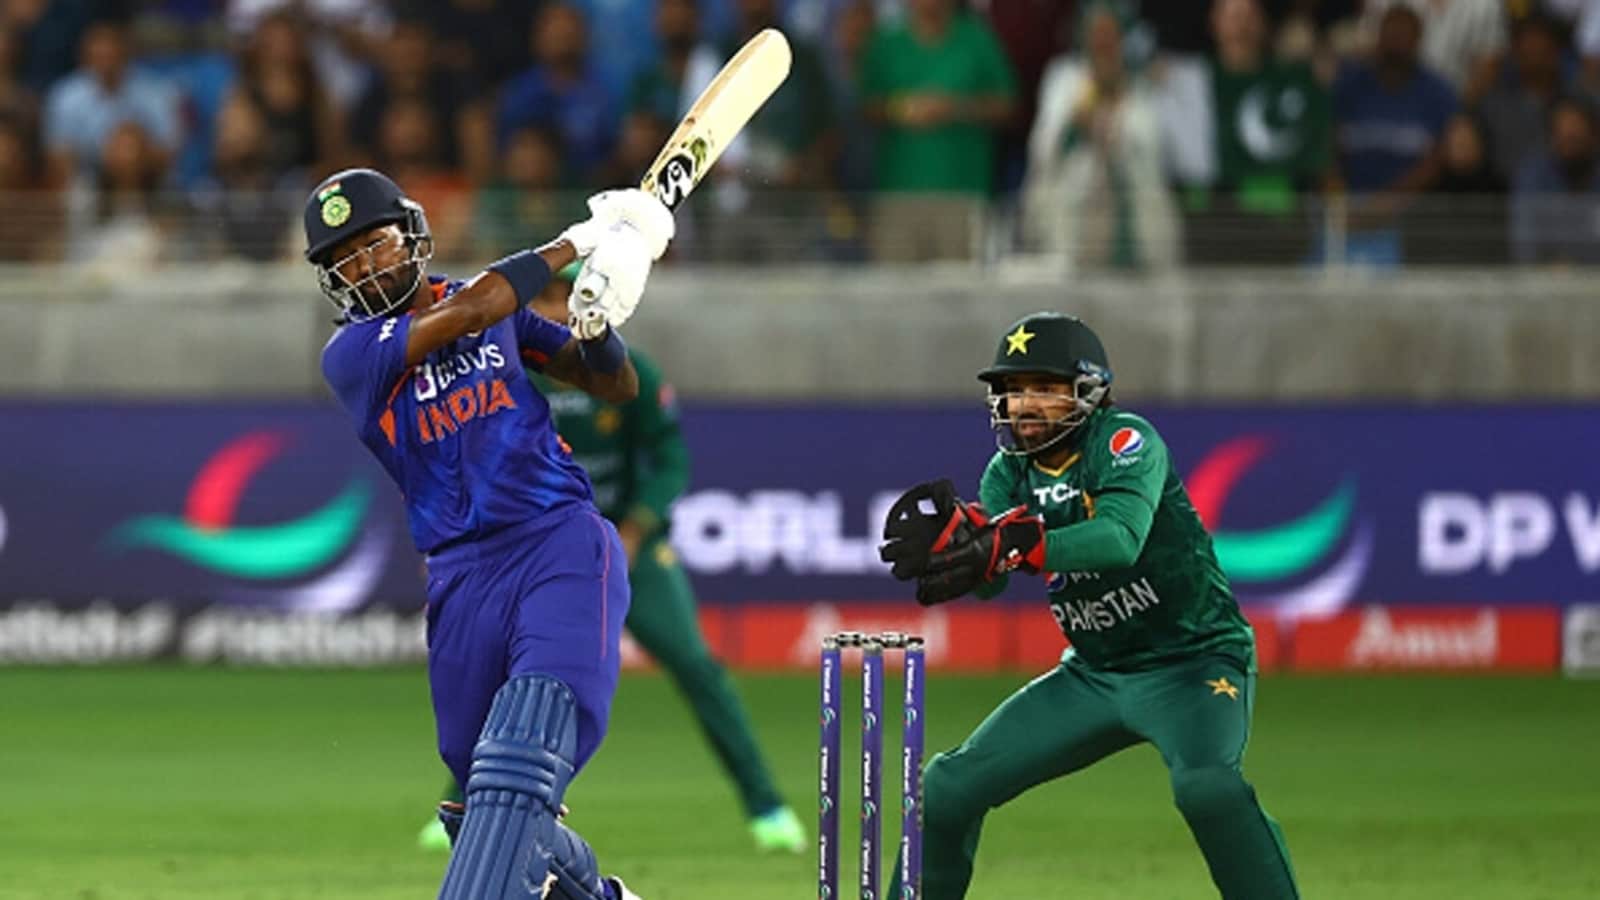 Watch: India's winning moment as Hardik Pandya smokes nonchalant six vs Pakistan | Cricket - Hindustan Times